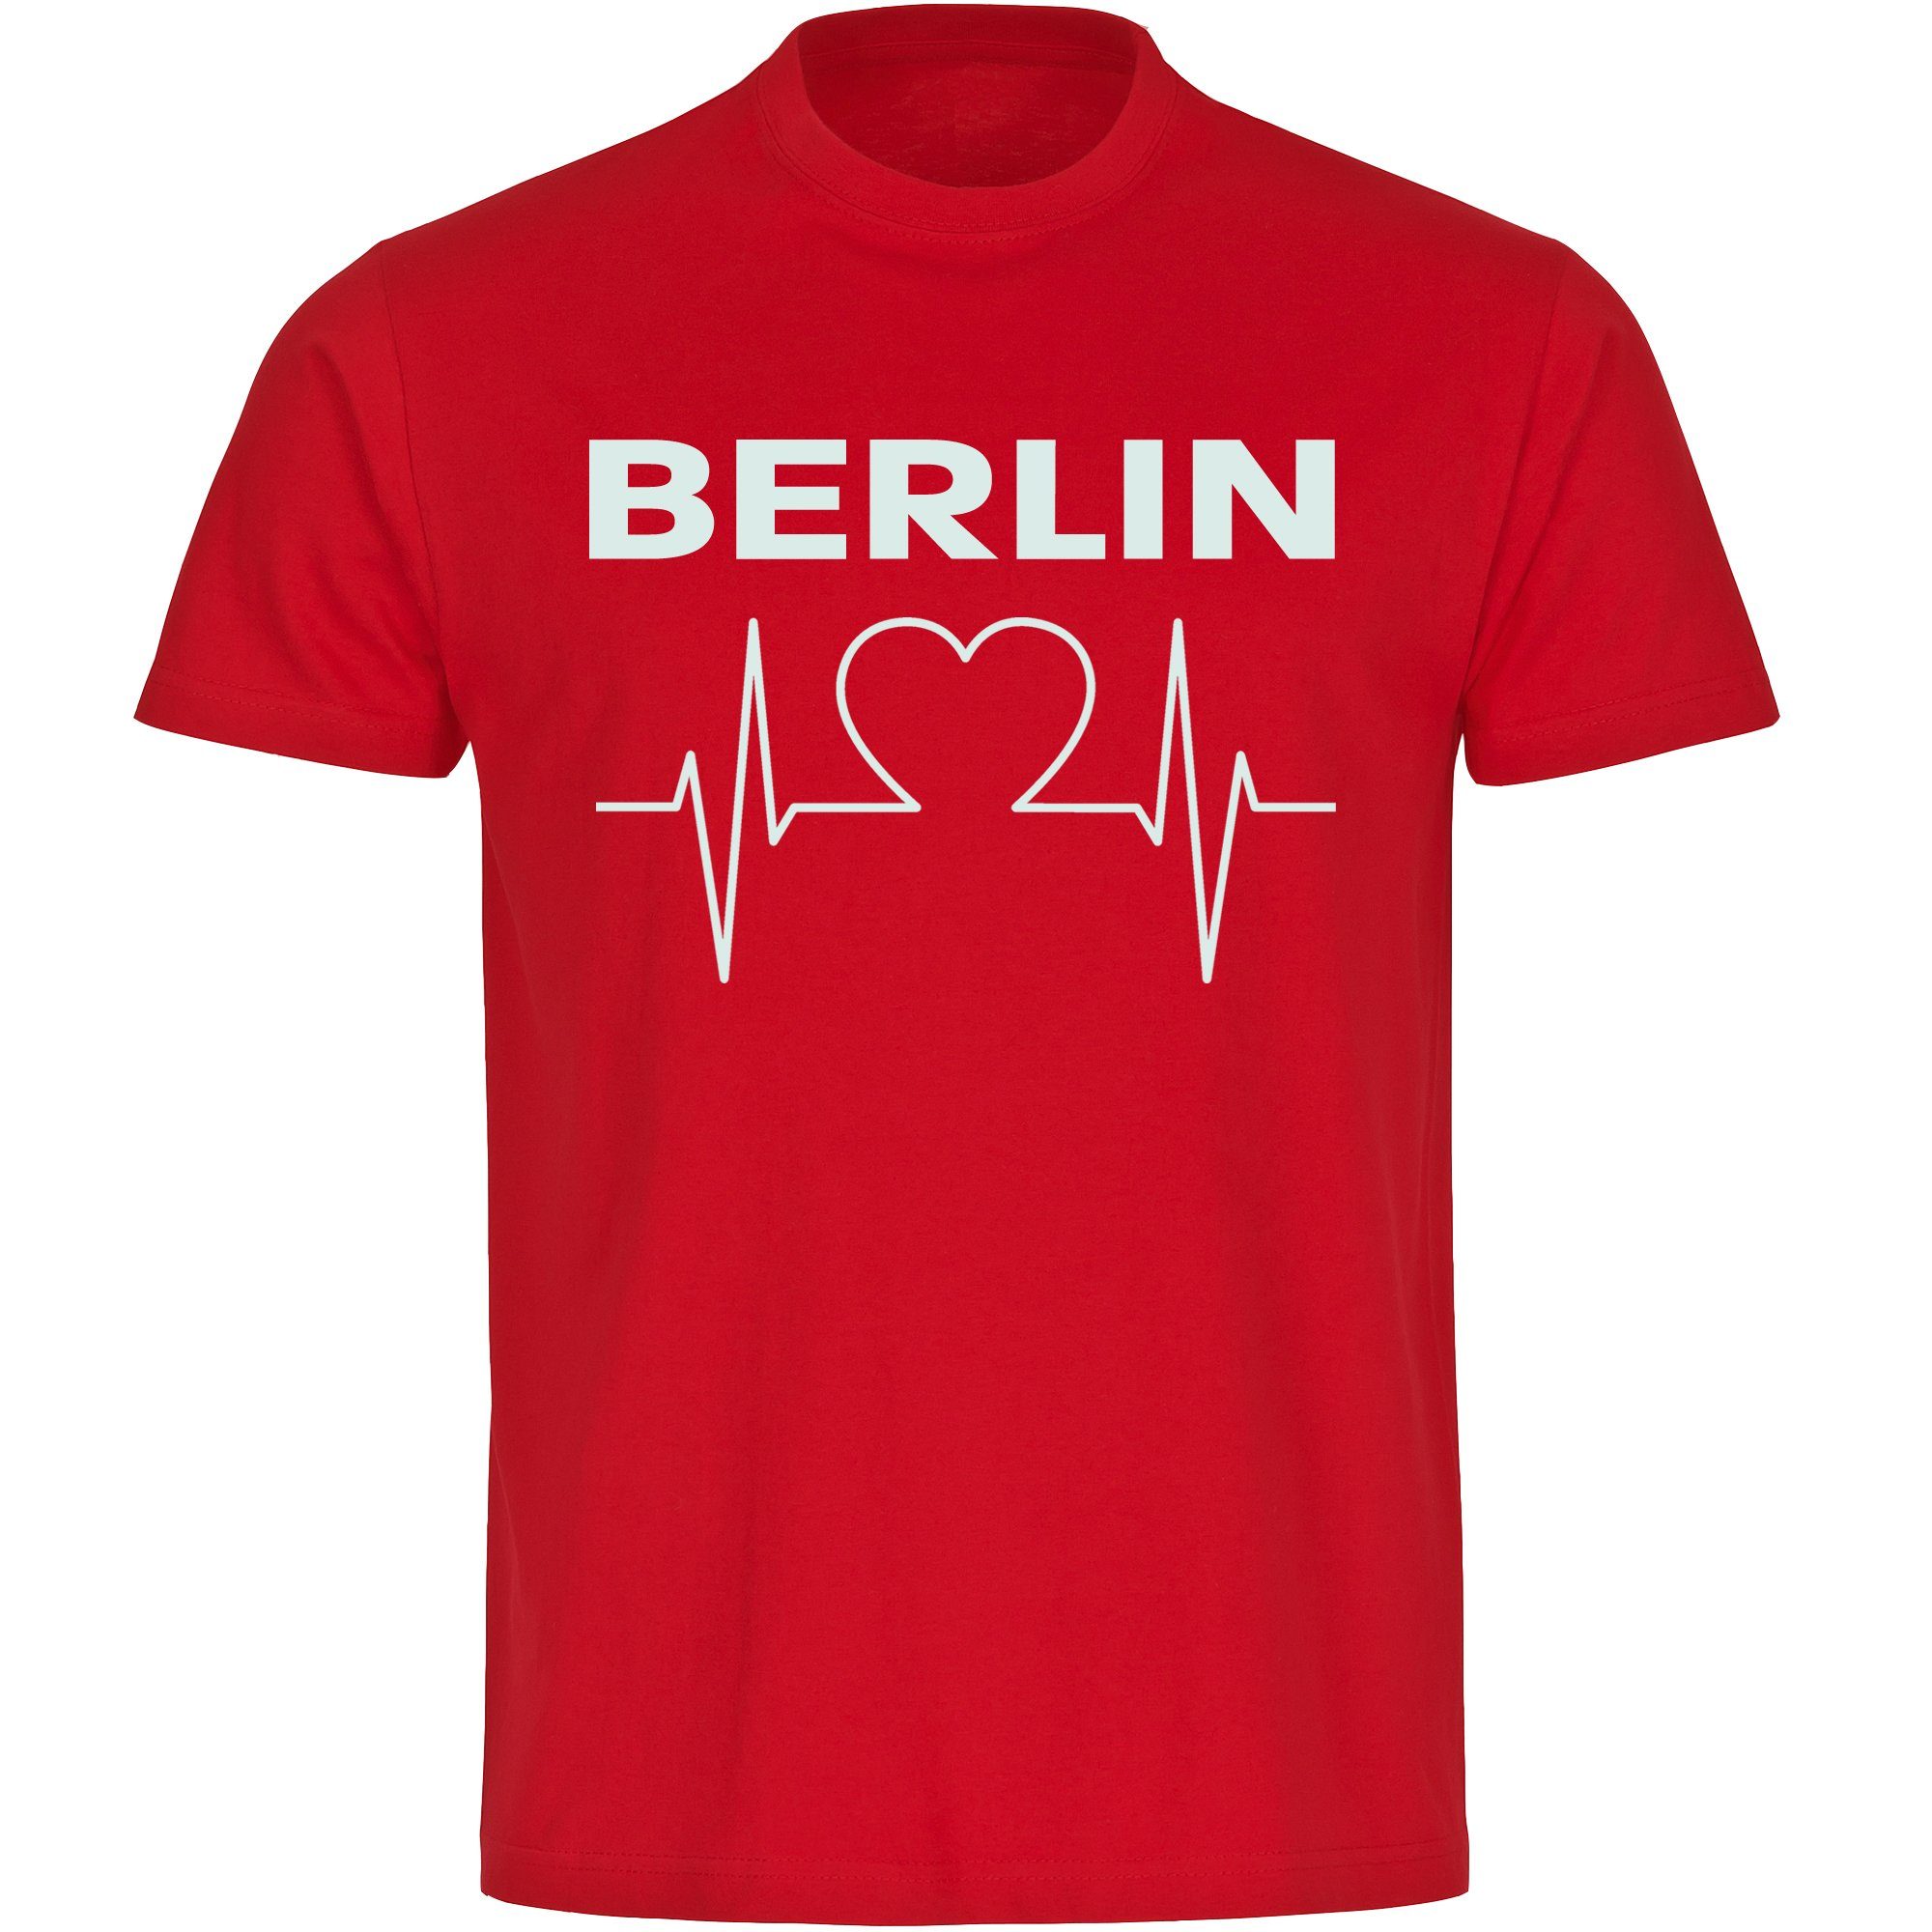 multifanshop T-Shirt Kinder Berlin rot - Herzschlag - Boy Girl